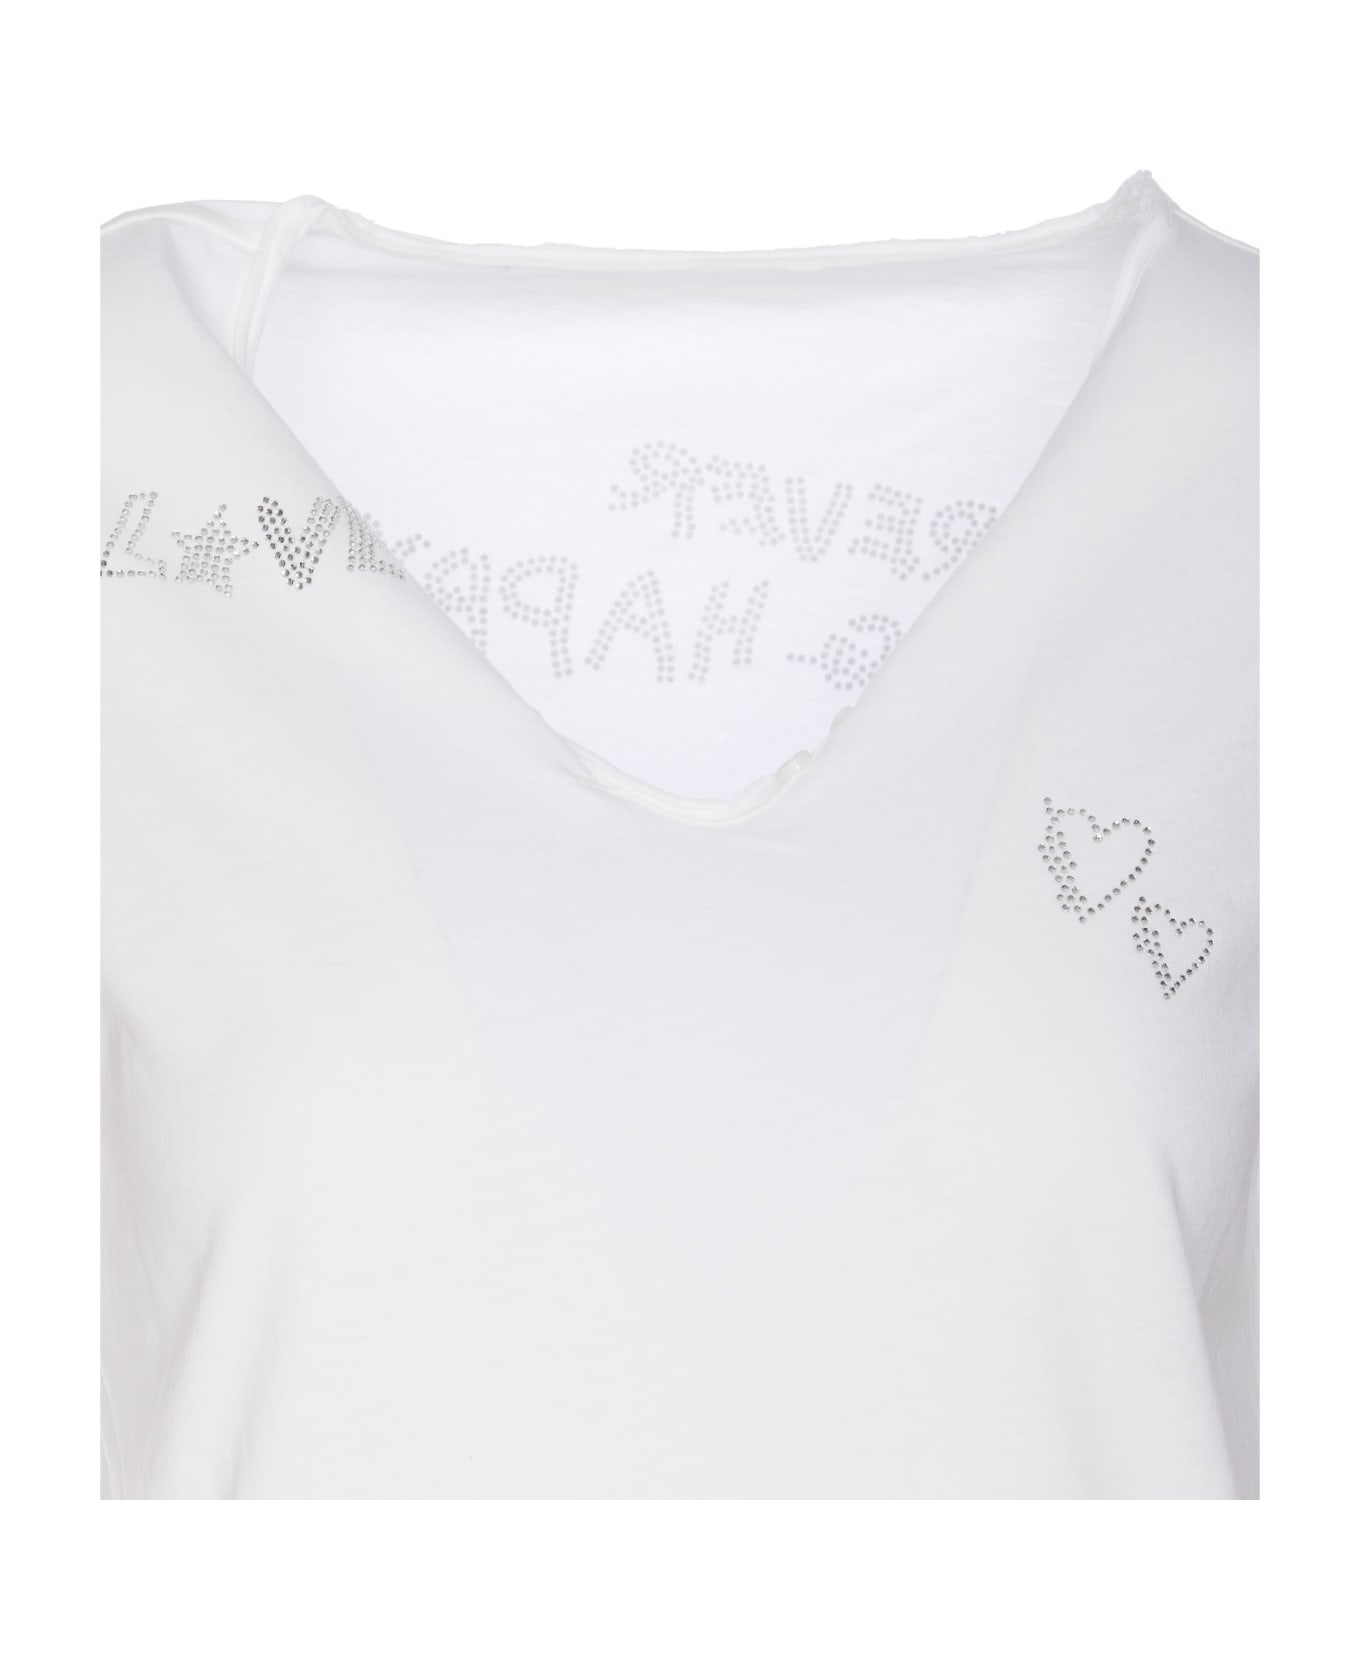 Zadig & Voltaire Tunisien Strass T-shirt - White